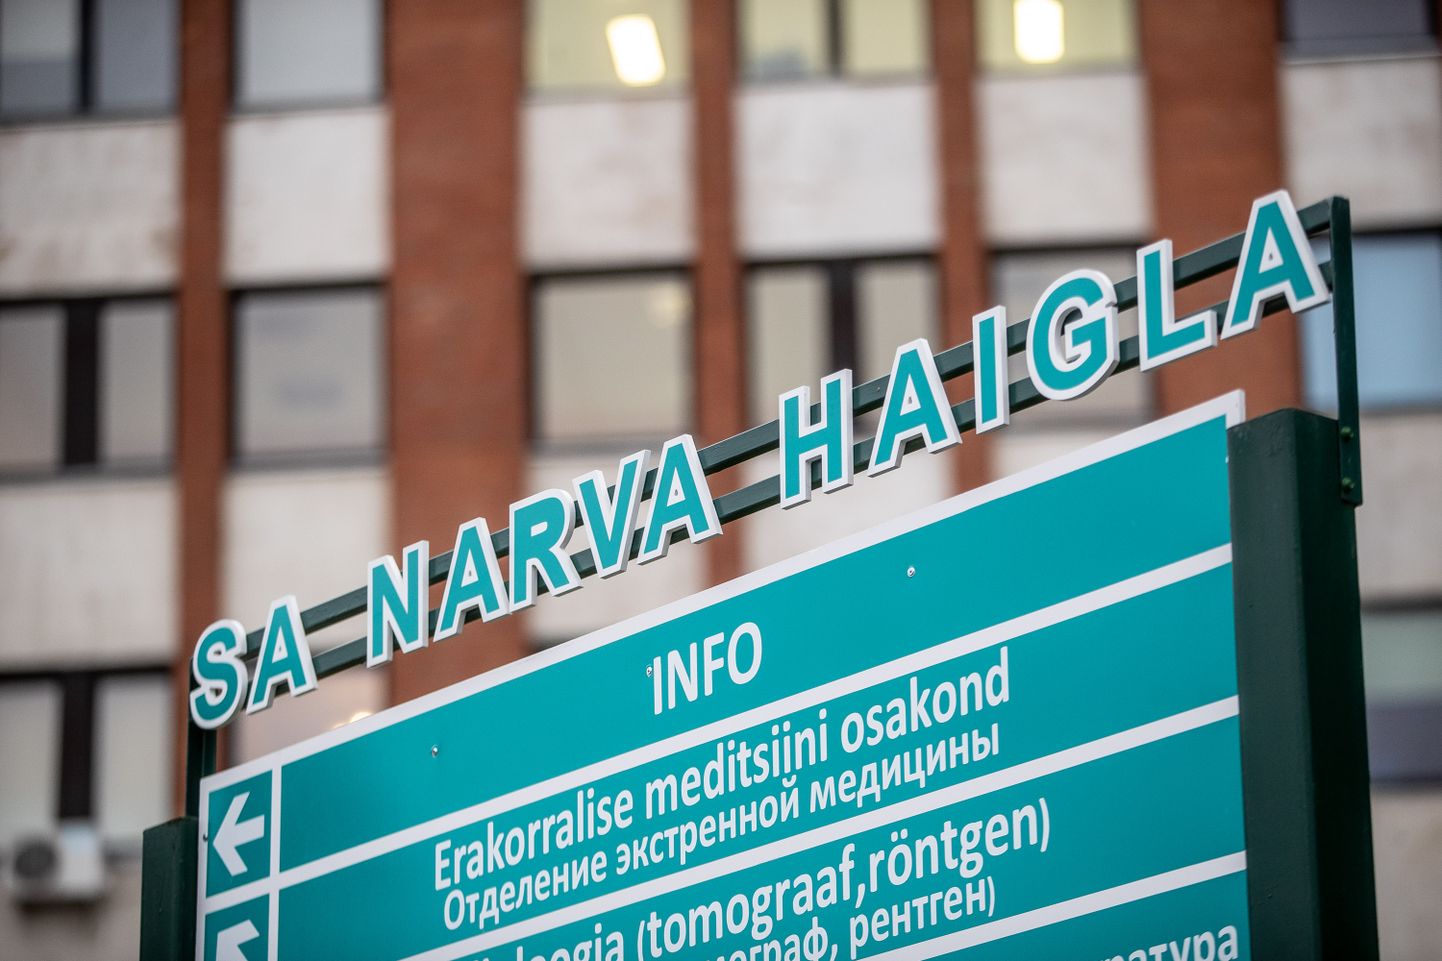 Narva haigla meedikud kutsusid kujunenud olukorra tõttu haigla nõukogu liikmeid tagasi astuma.